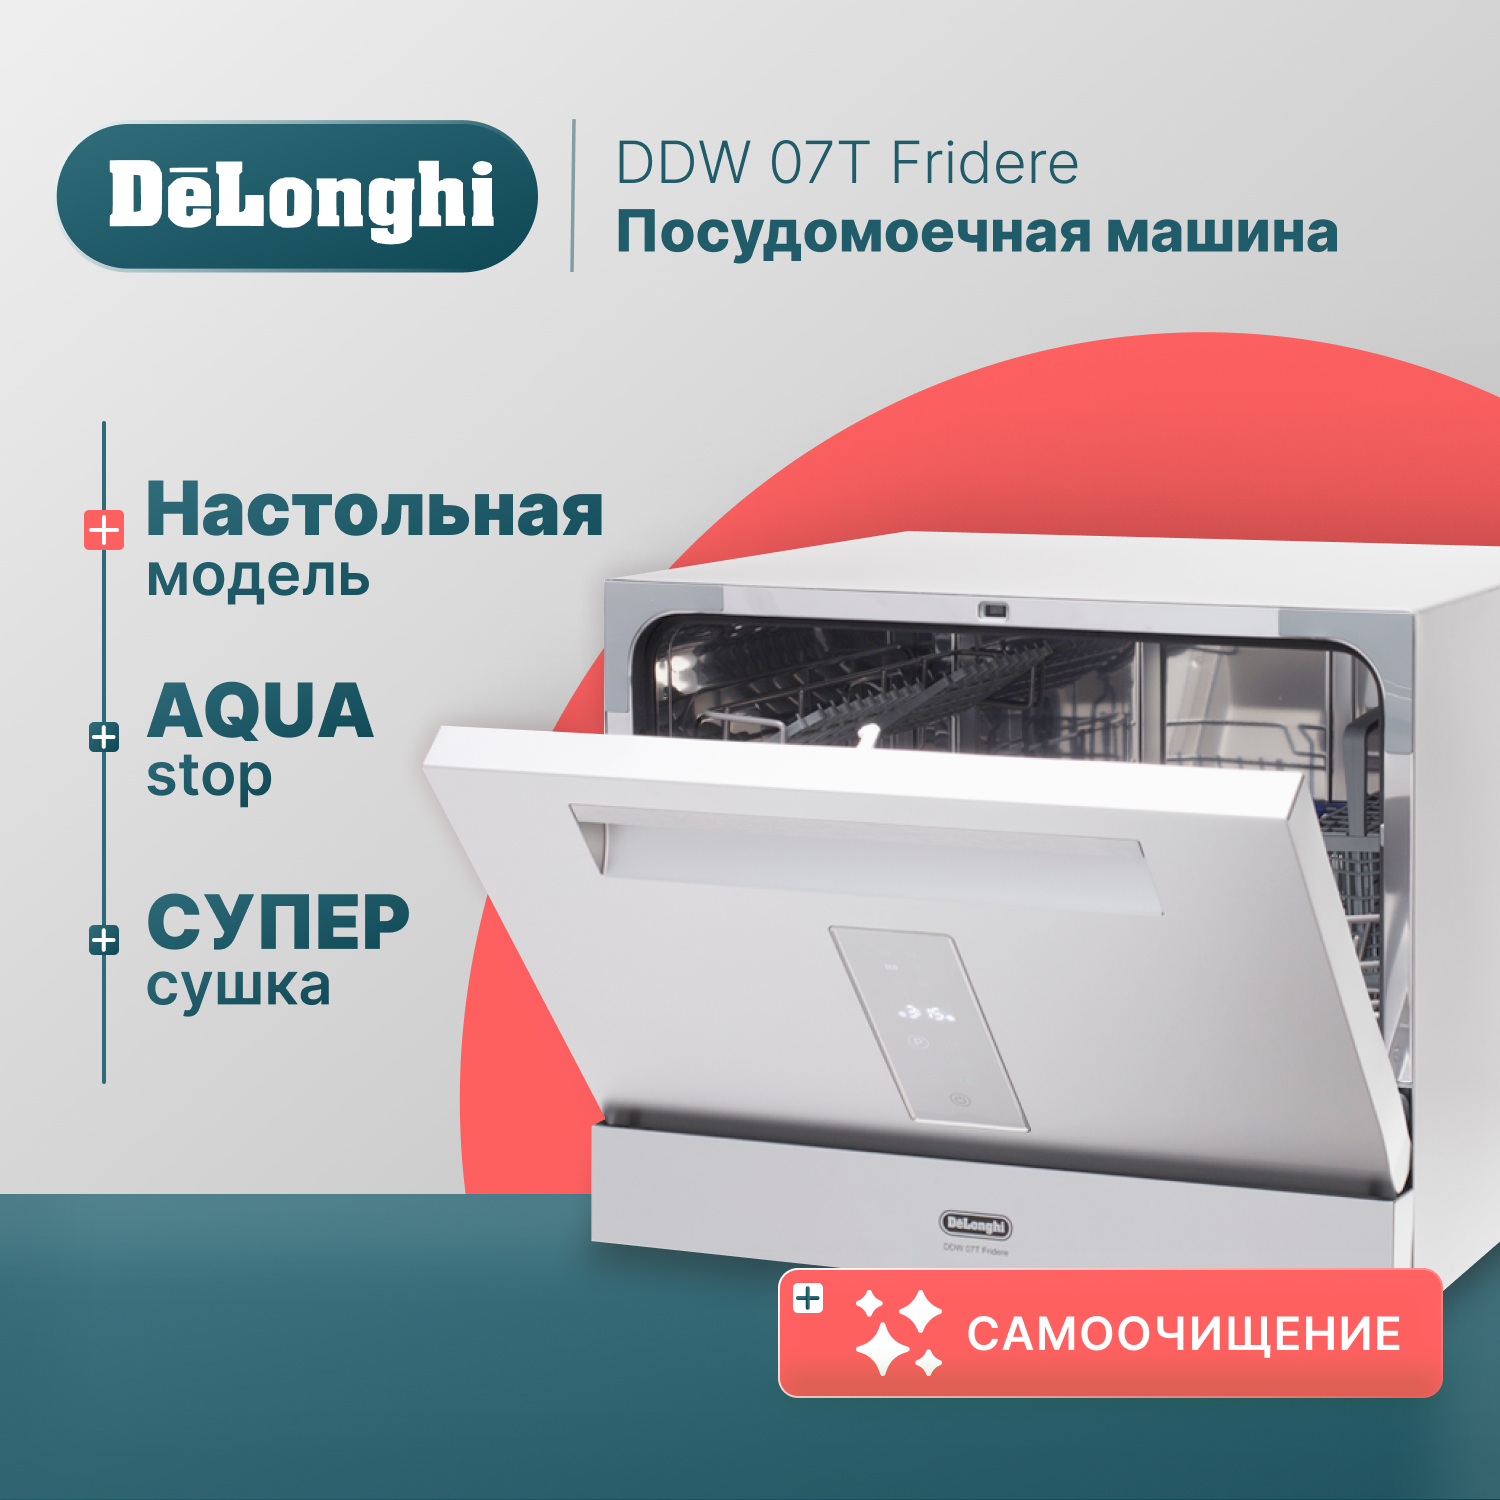 Посудомоечная машина Delonghi DDW07T Fridere серебристый, купить в Москве, цены в интернет-магазинах на Мегамаркет